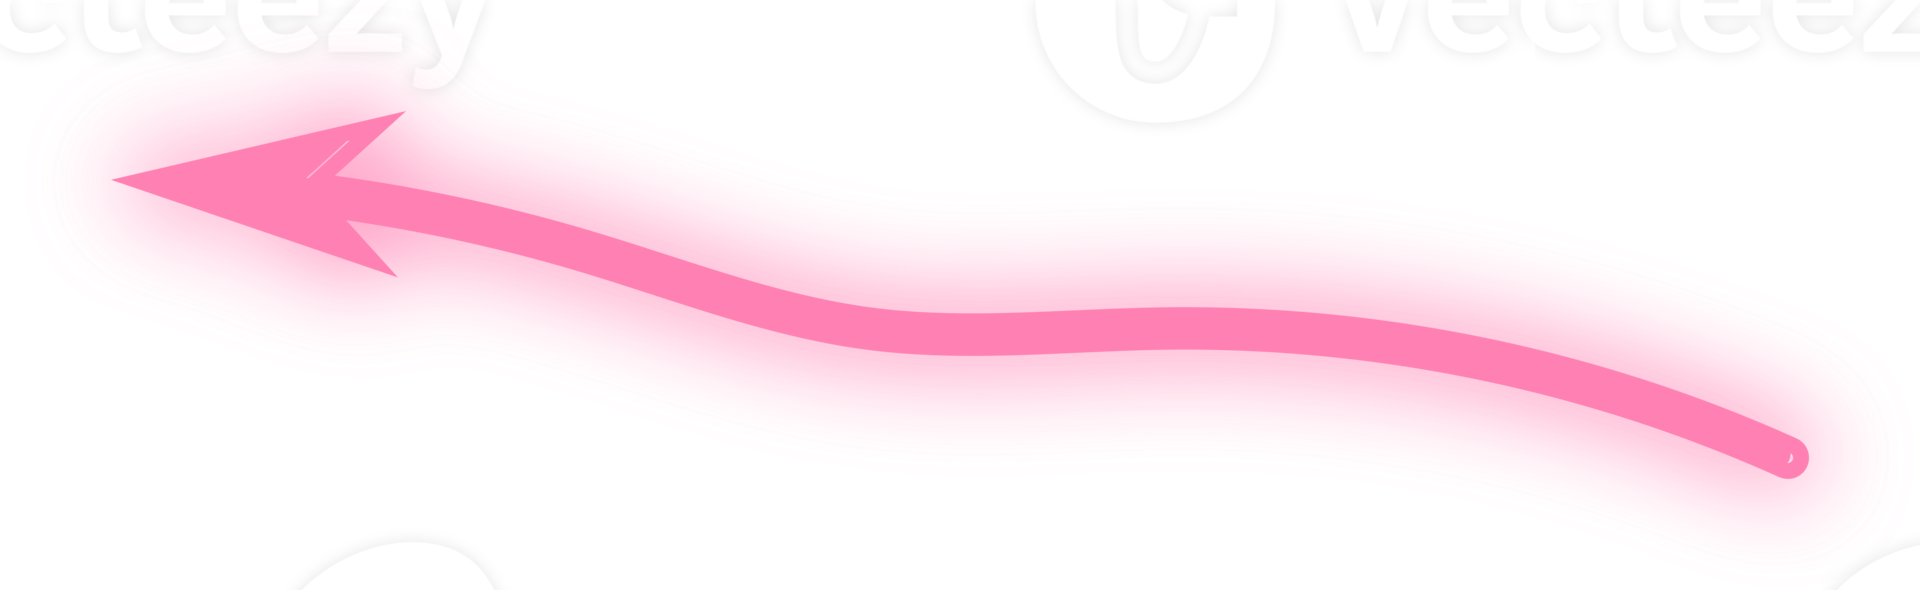 flecha de neón abstracto rosa png